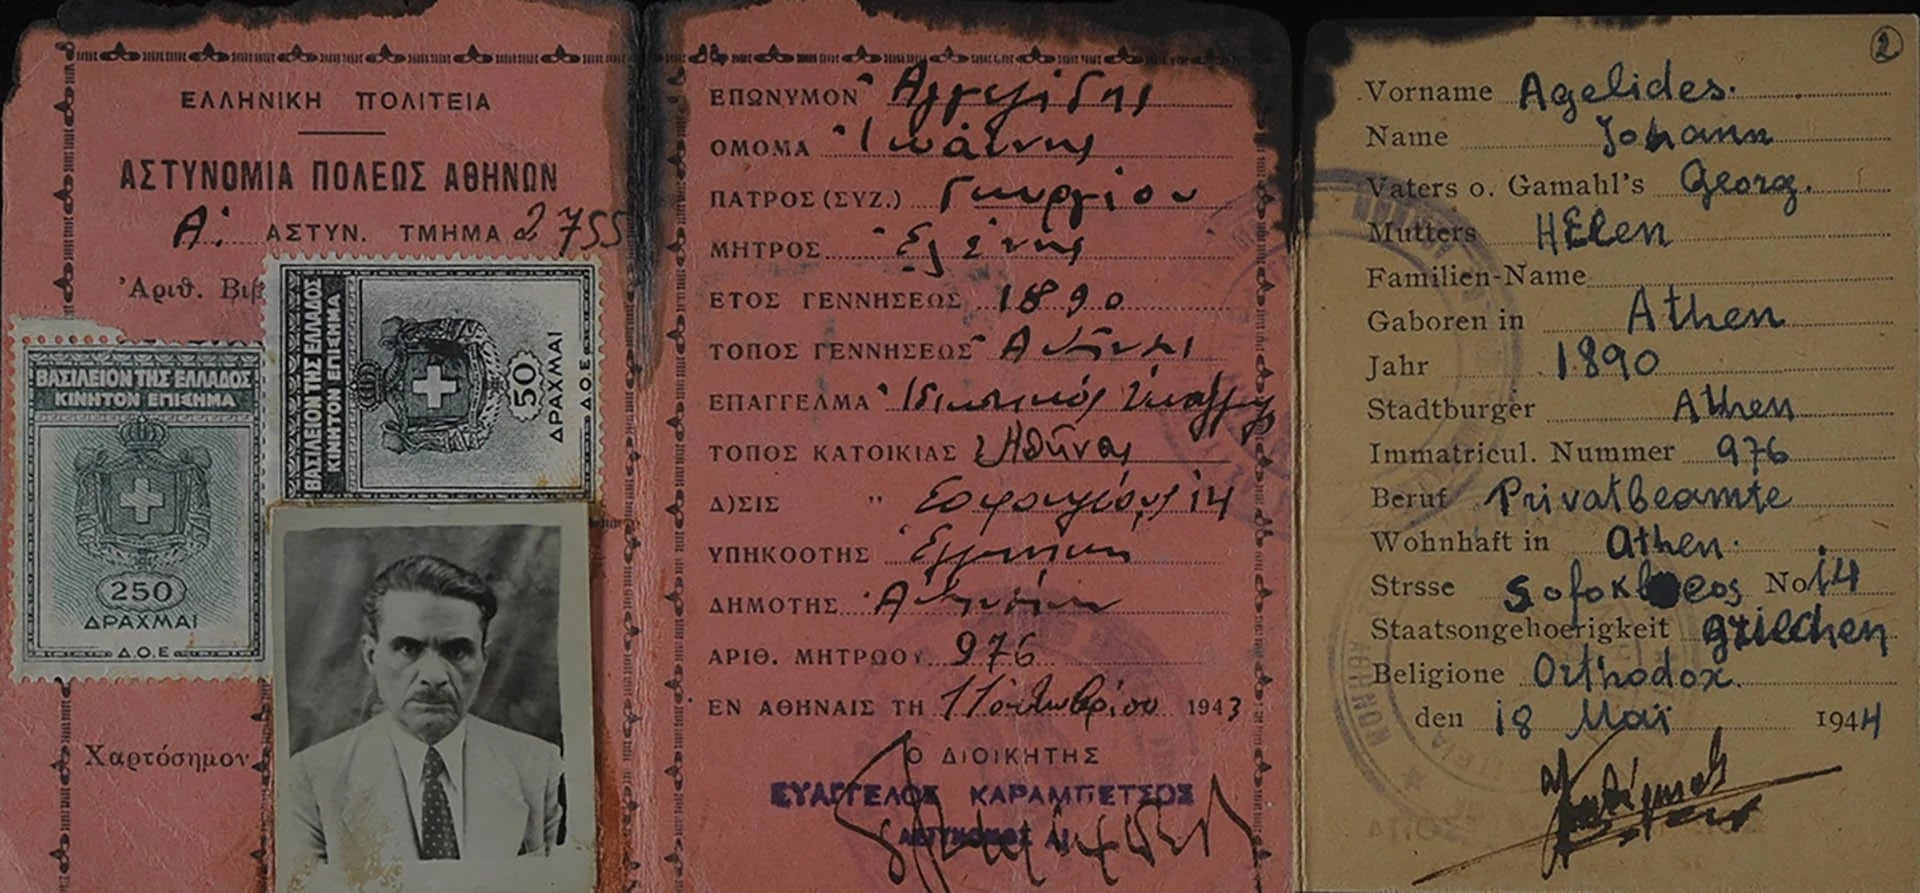 Documentos de identidad falsos de Isaac Angel, que asumió el nombre de Johann Agelides para esconderse en Atenas. (Yad Vashem)